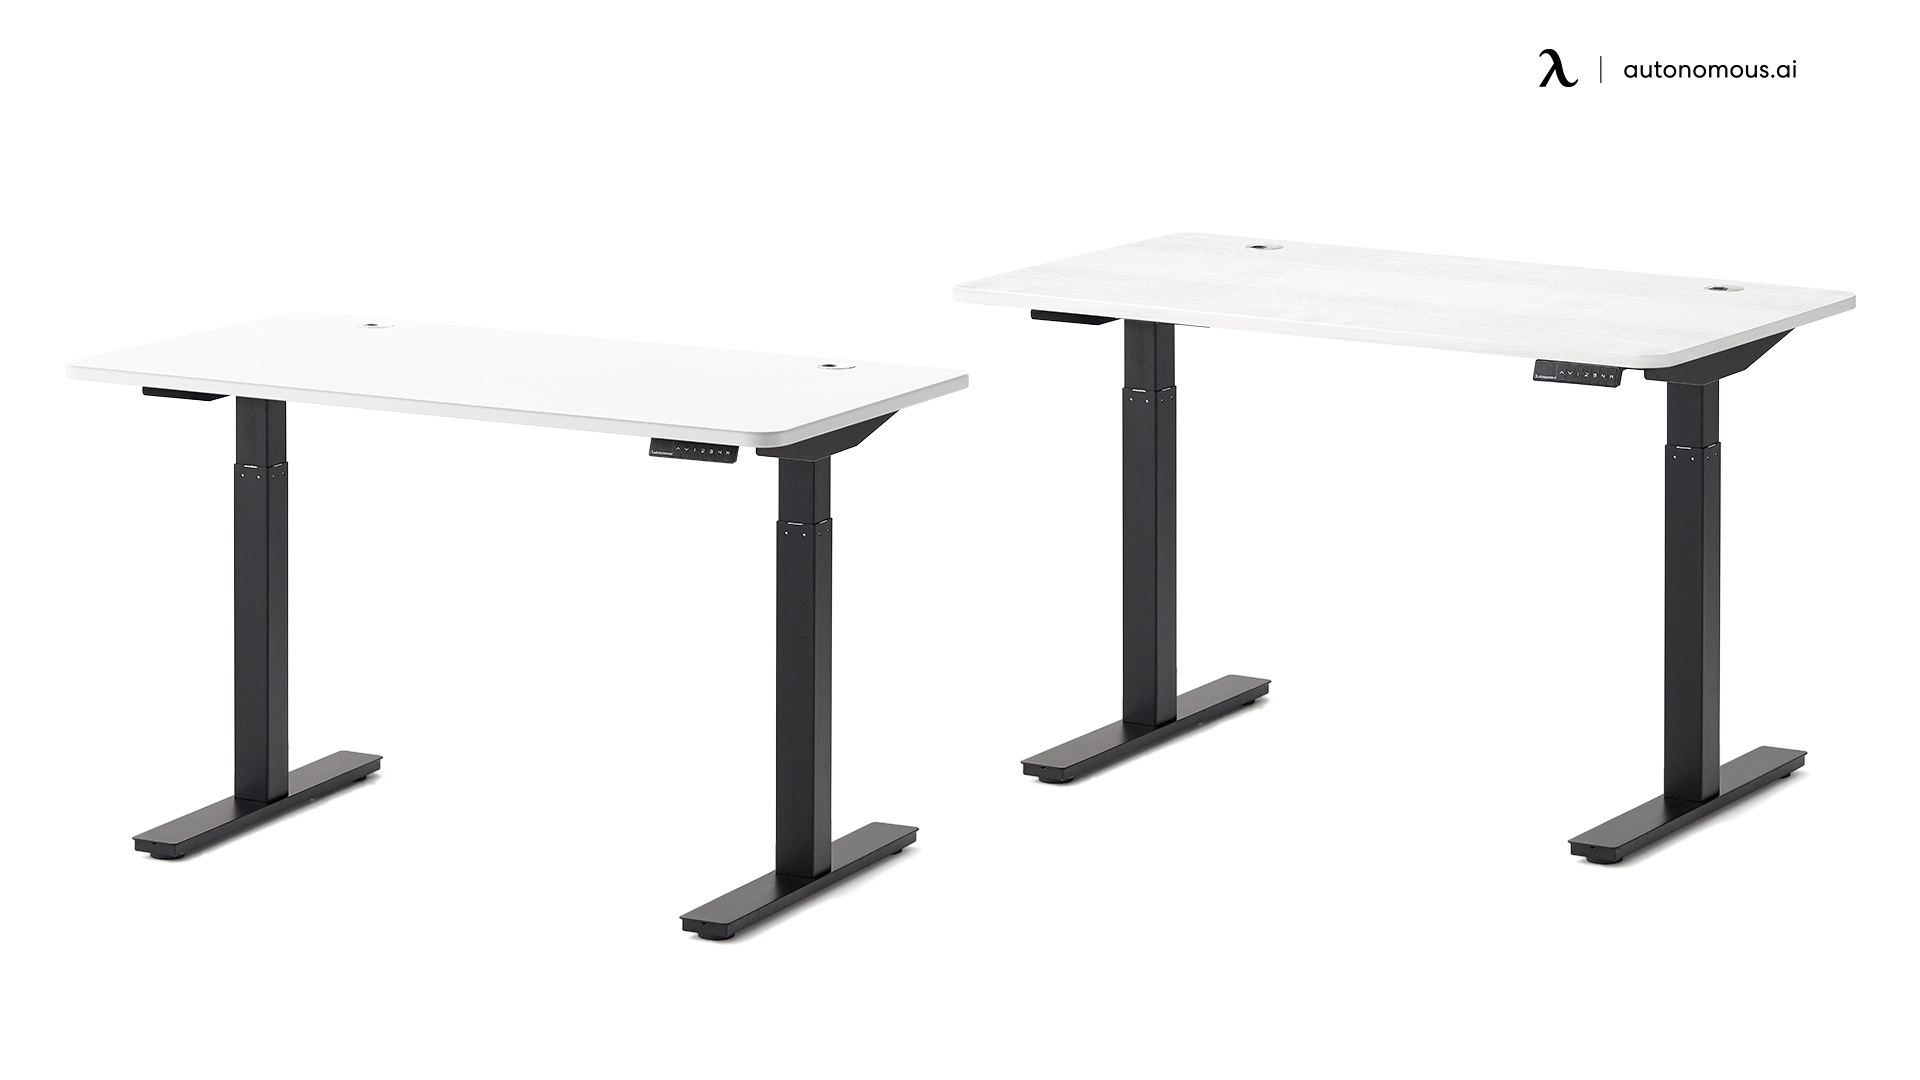 SmartDesk Core white desk with black legs